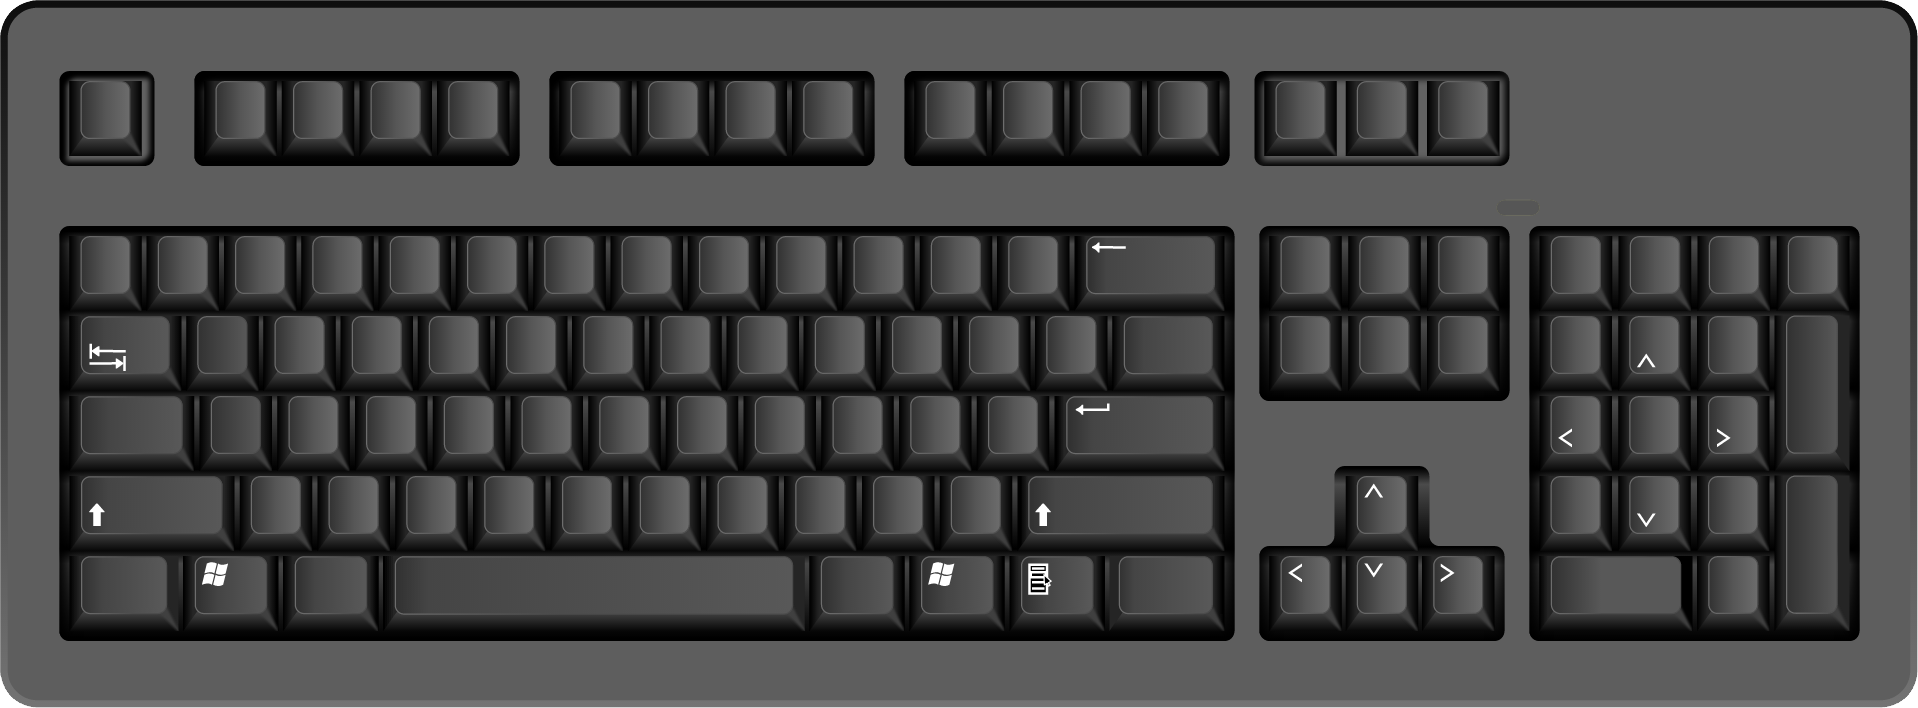 Black Keyboard PNG Image.